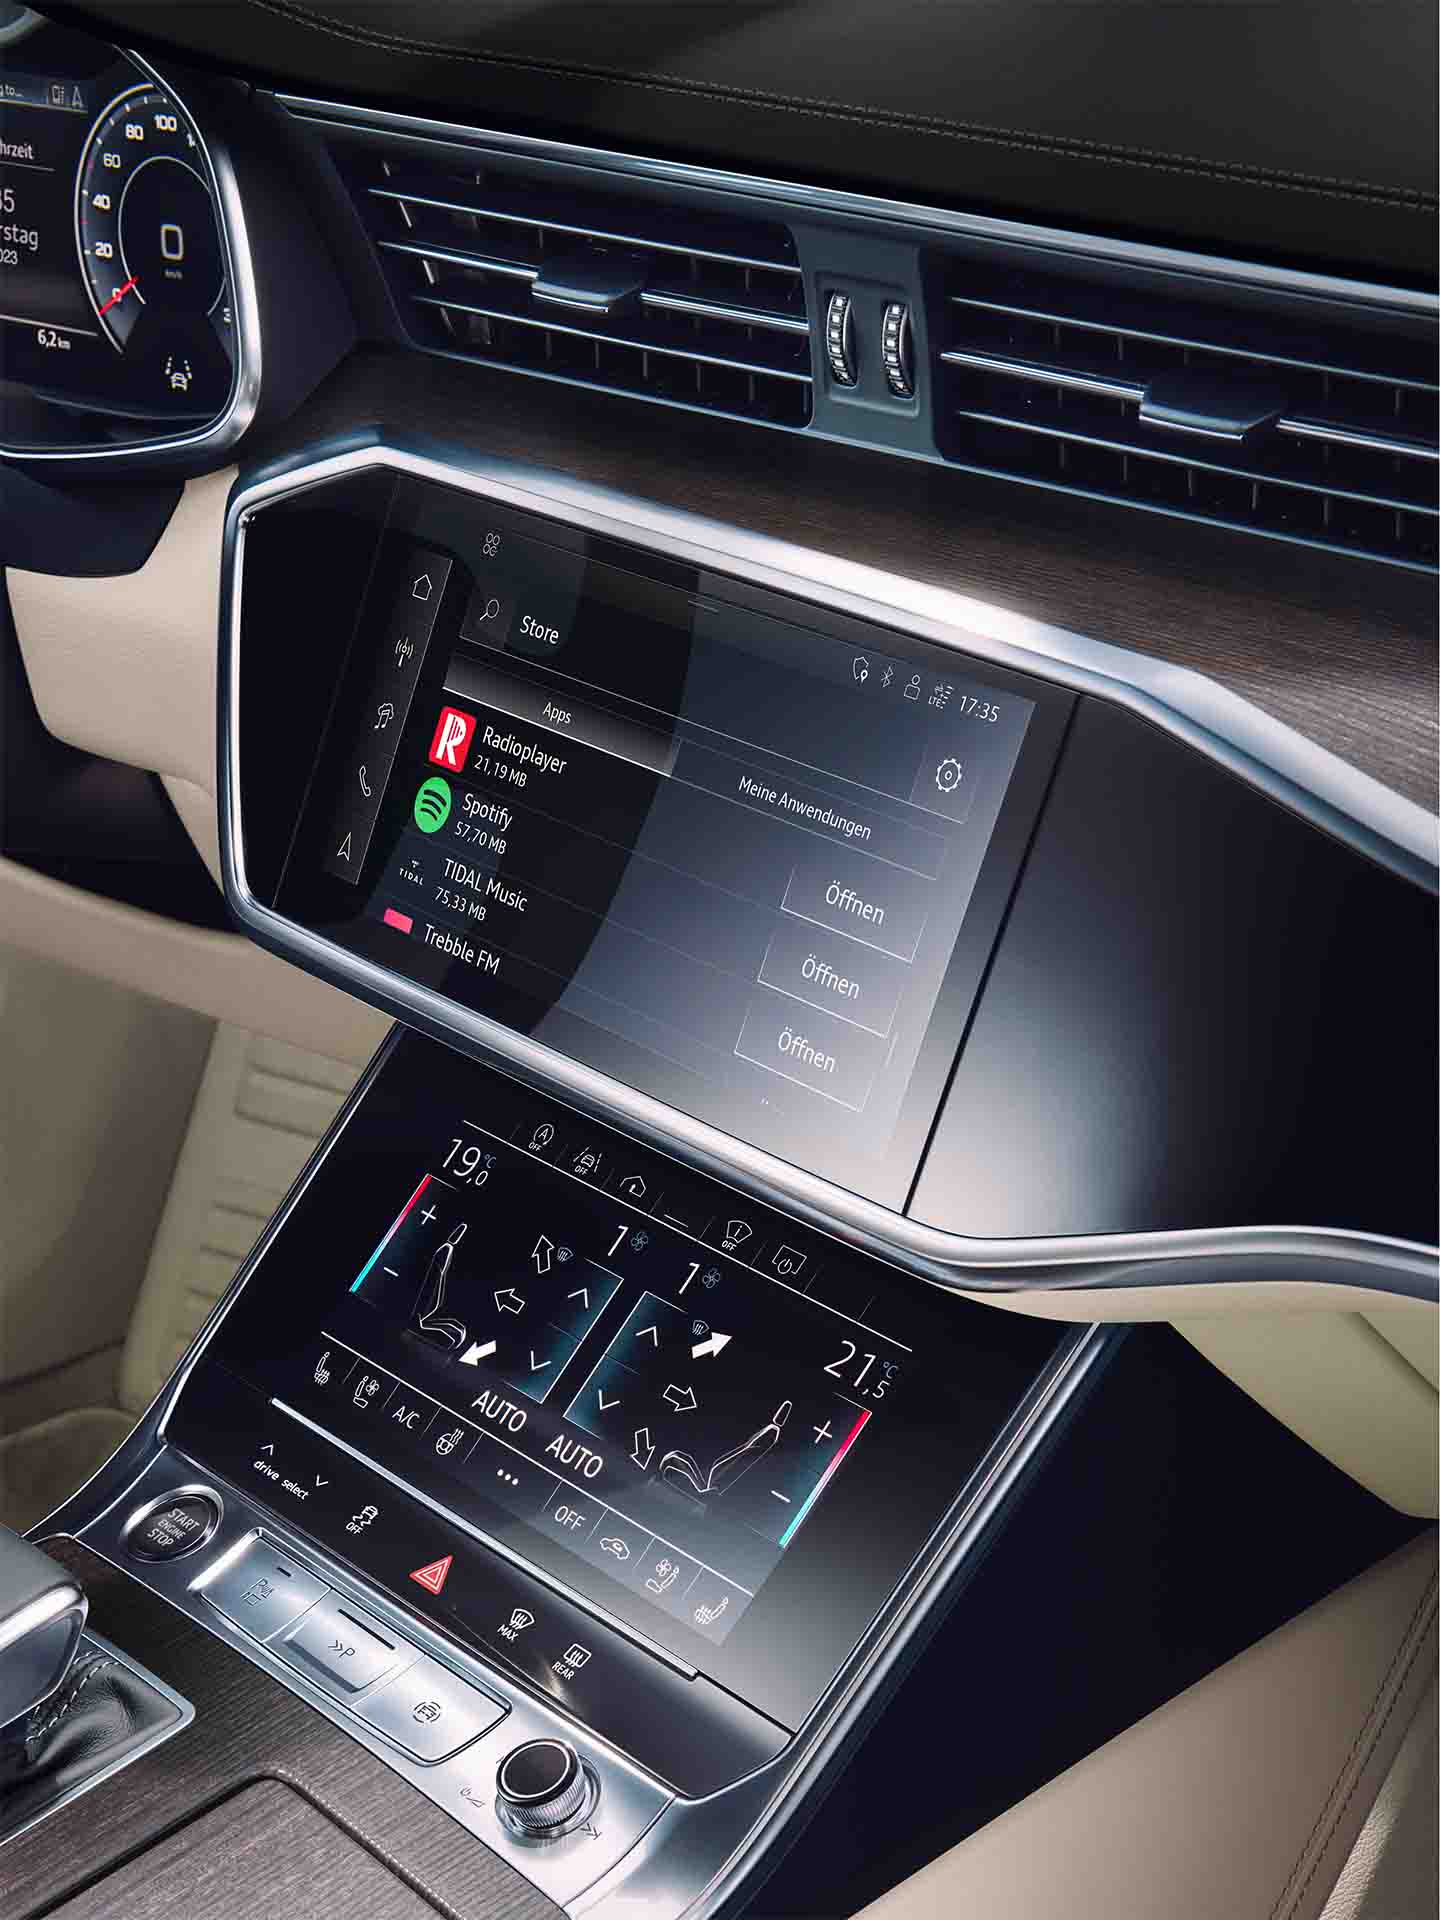 Audi MMI system